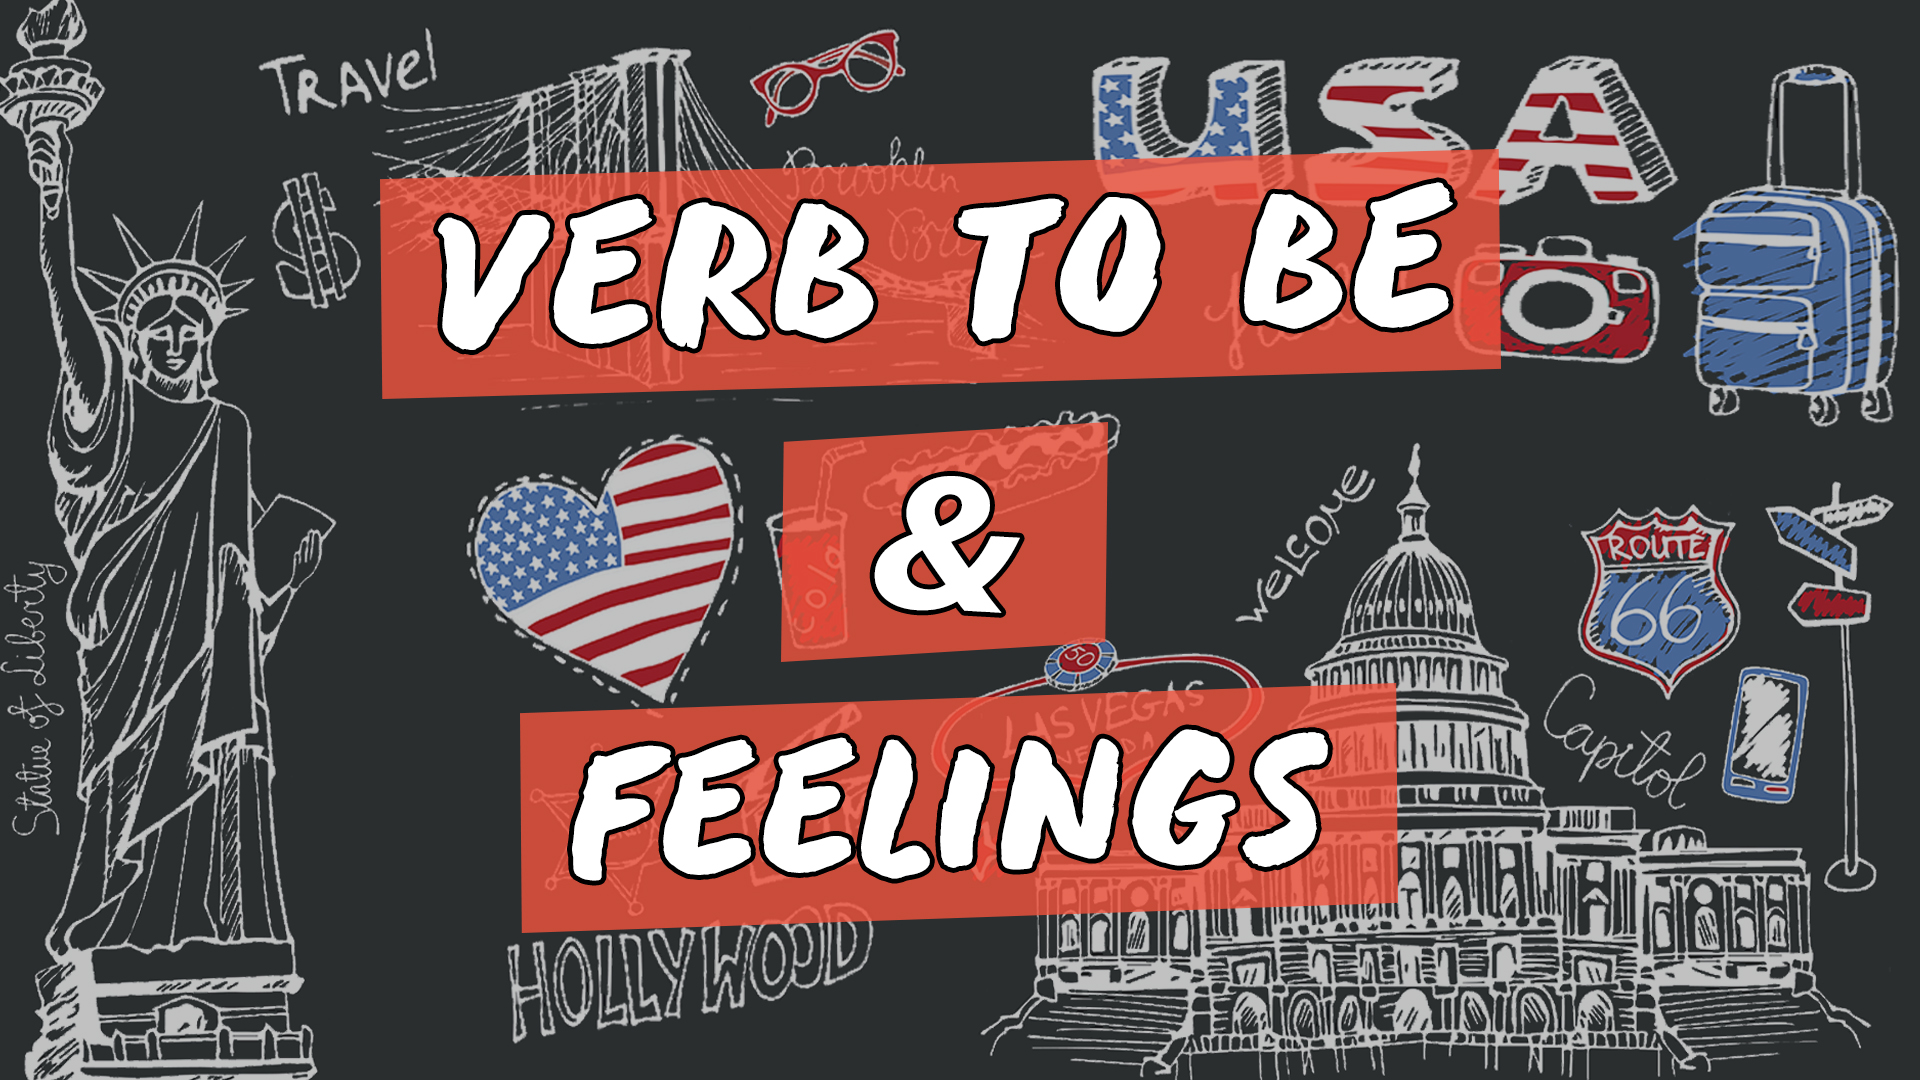 "Verb to Be & Feelings" escrito sobre ilustração de diversos símbolos estadunidenses